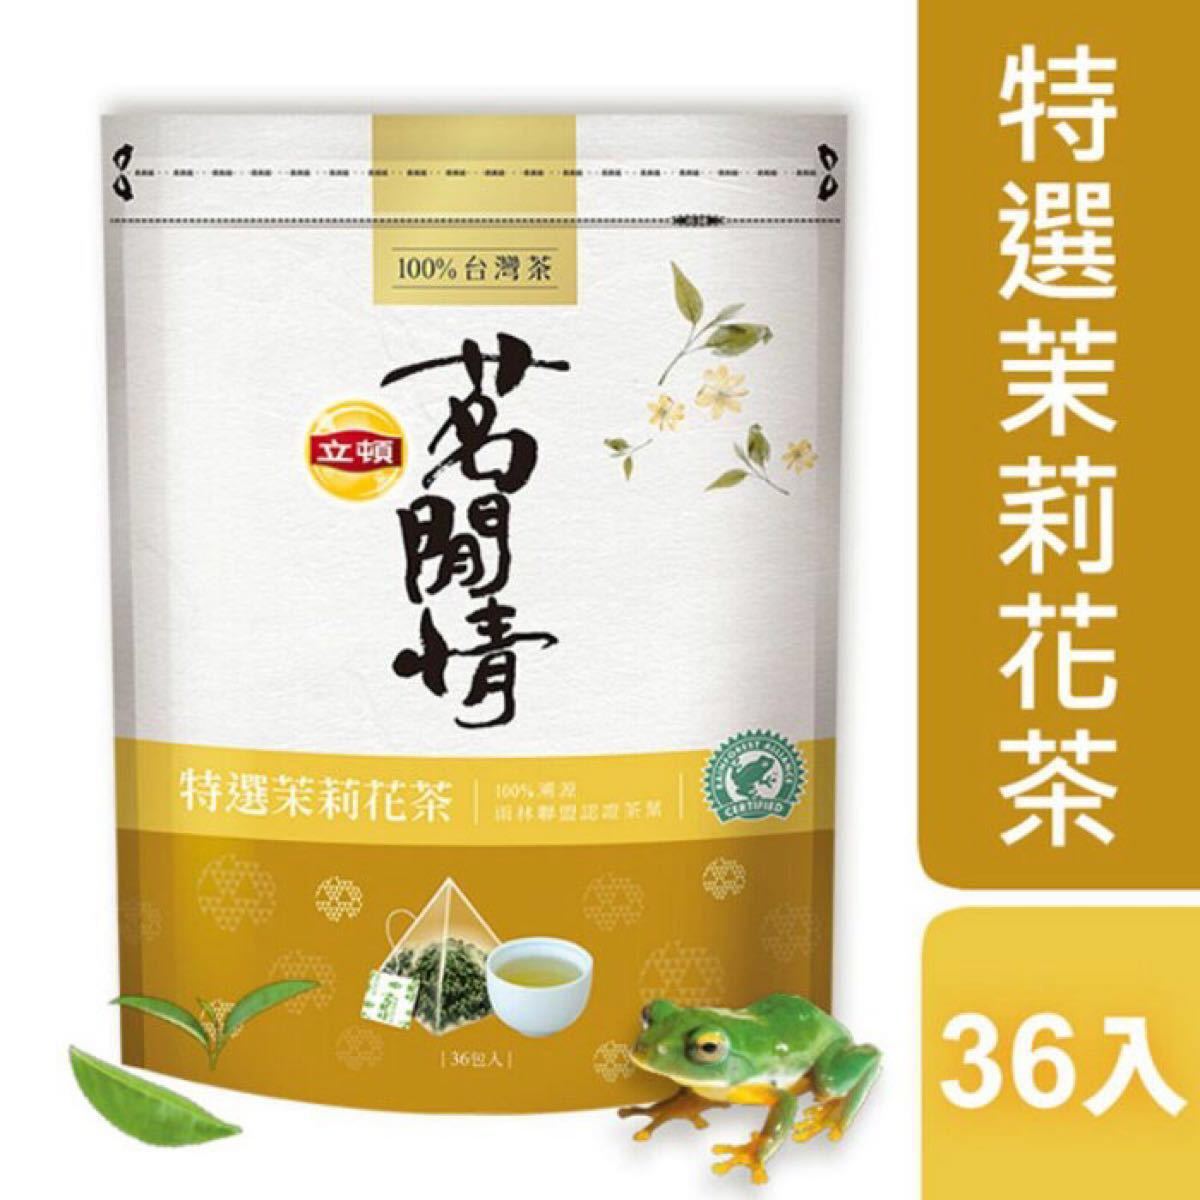 【100%台湾茶】立頓-茉莉花茶